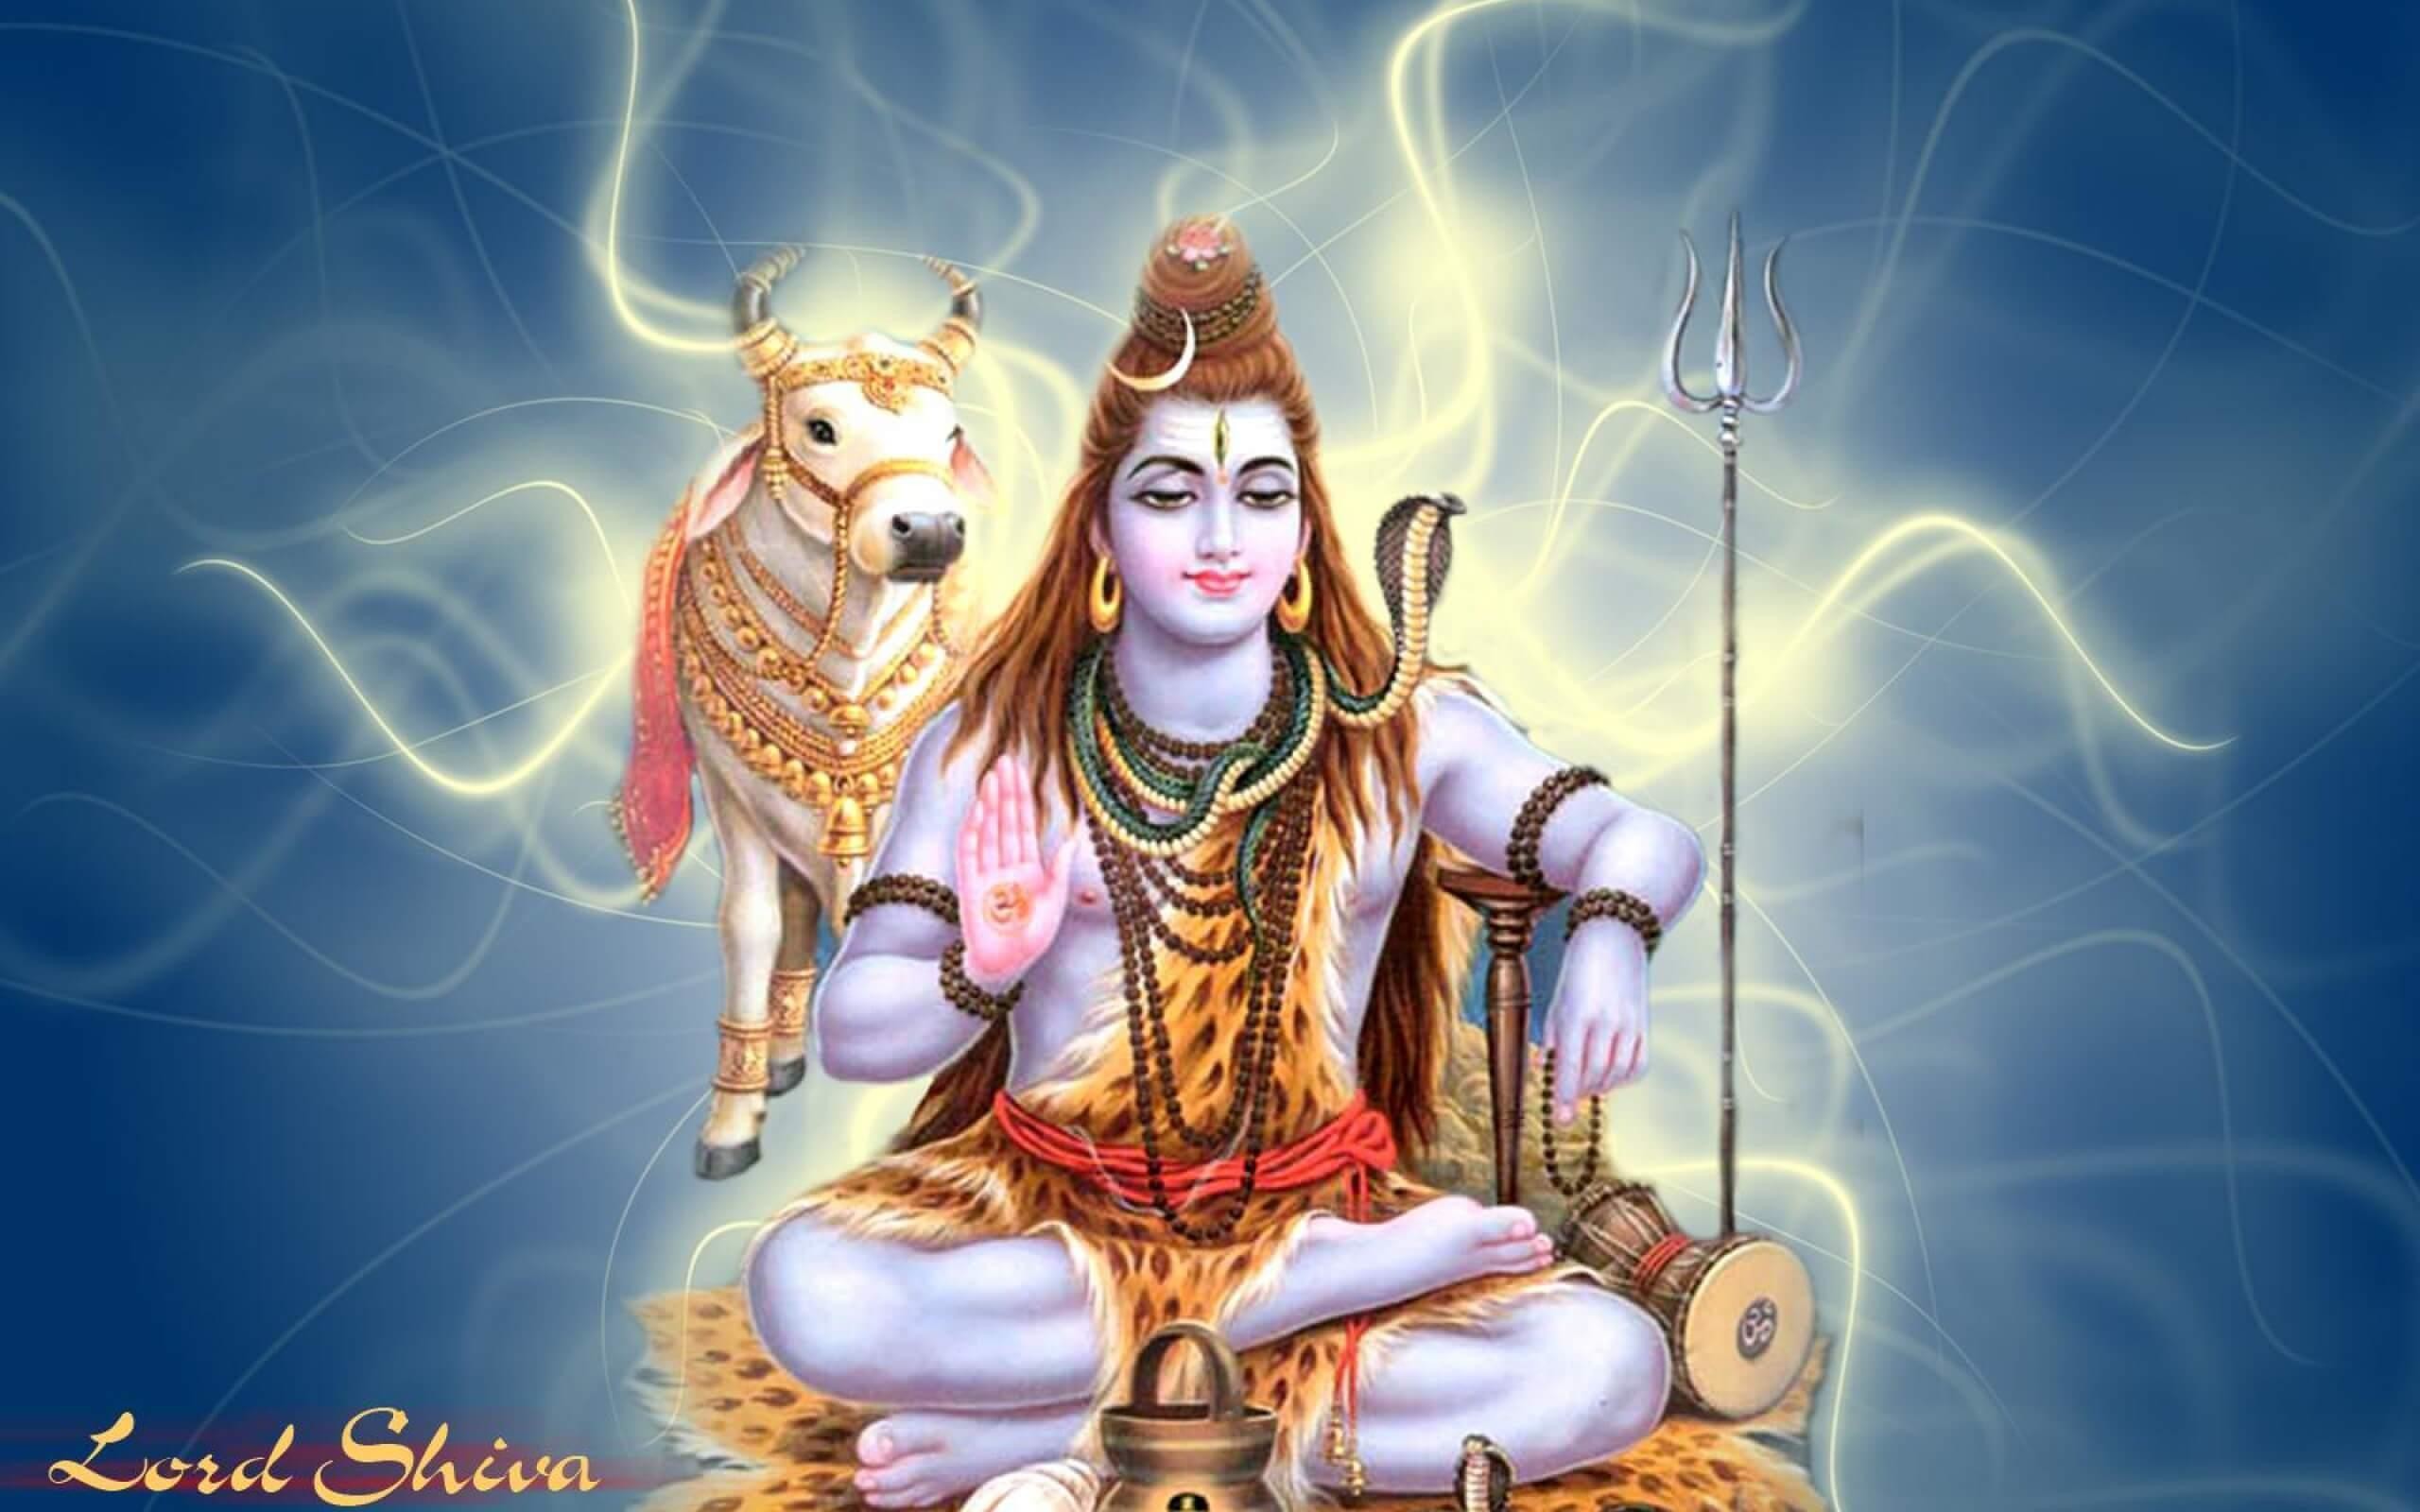 Best Shiva Wallpapers - Top Những Hình Ảnh Đẹp